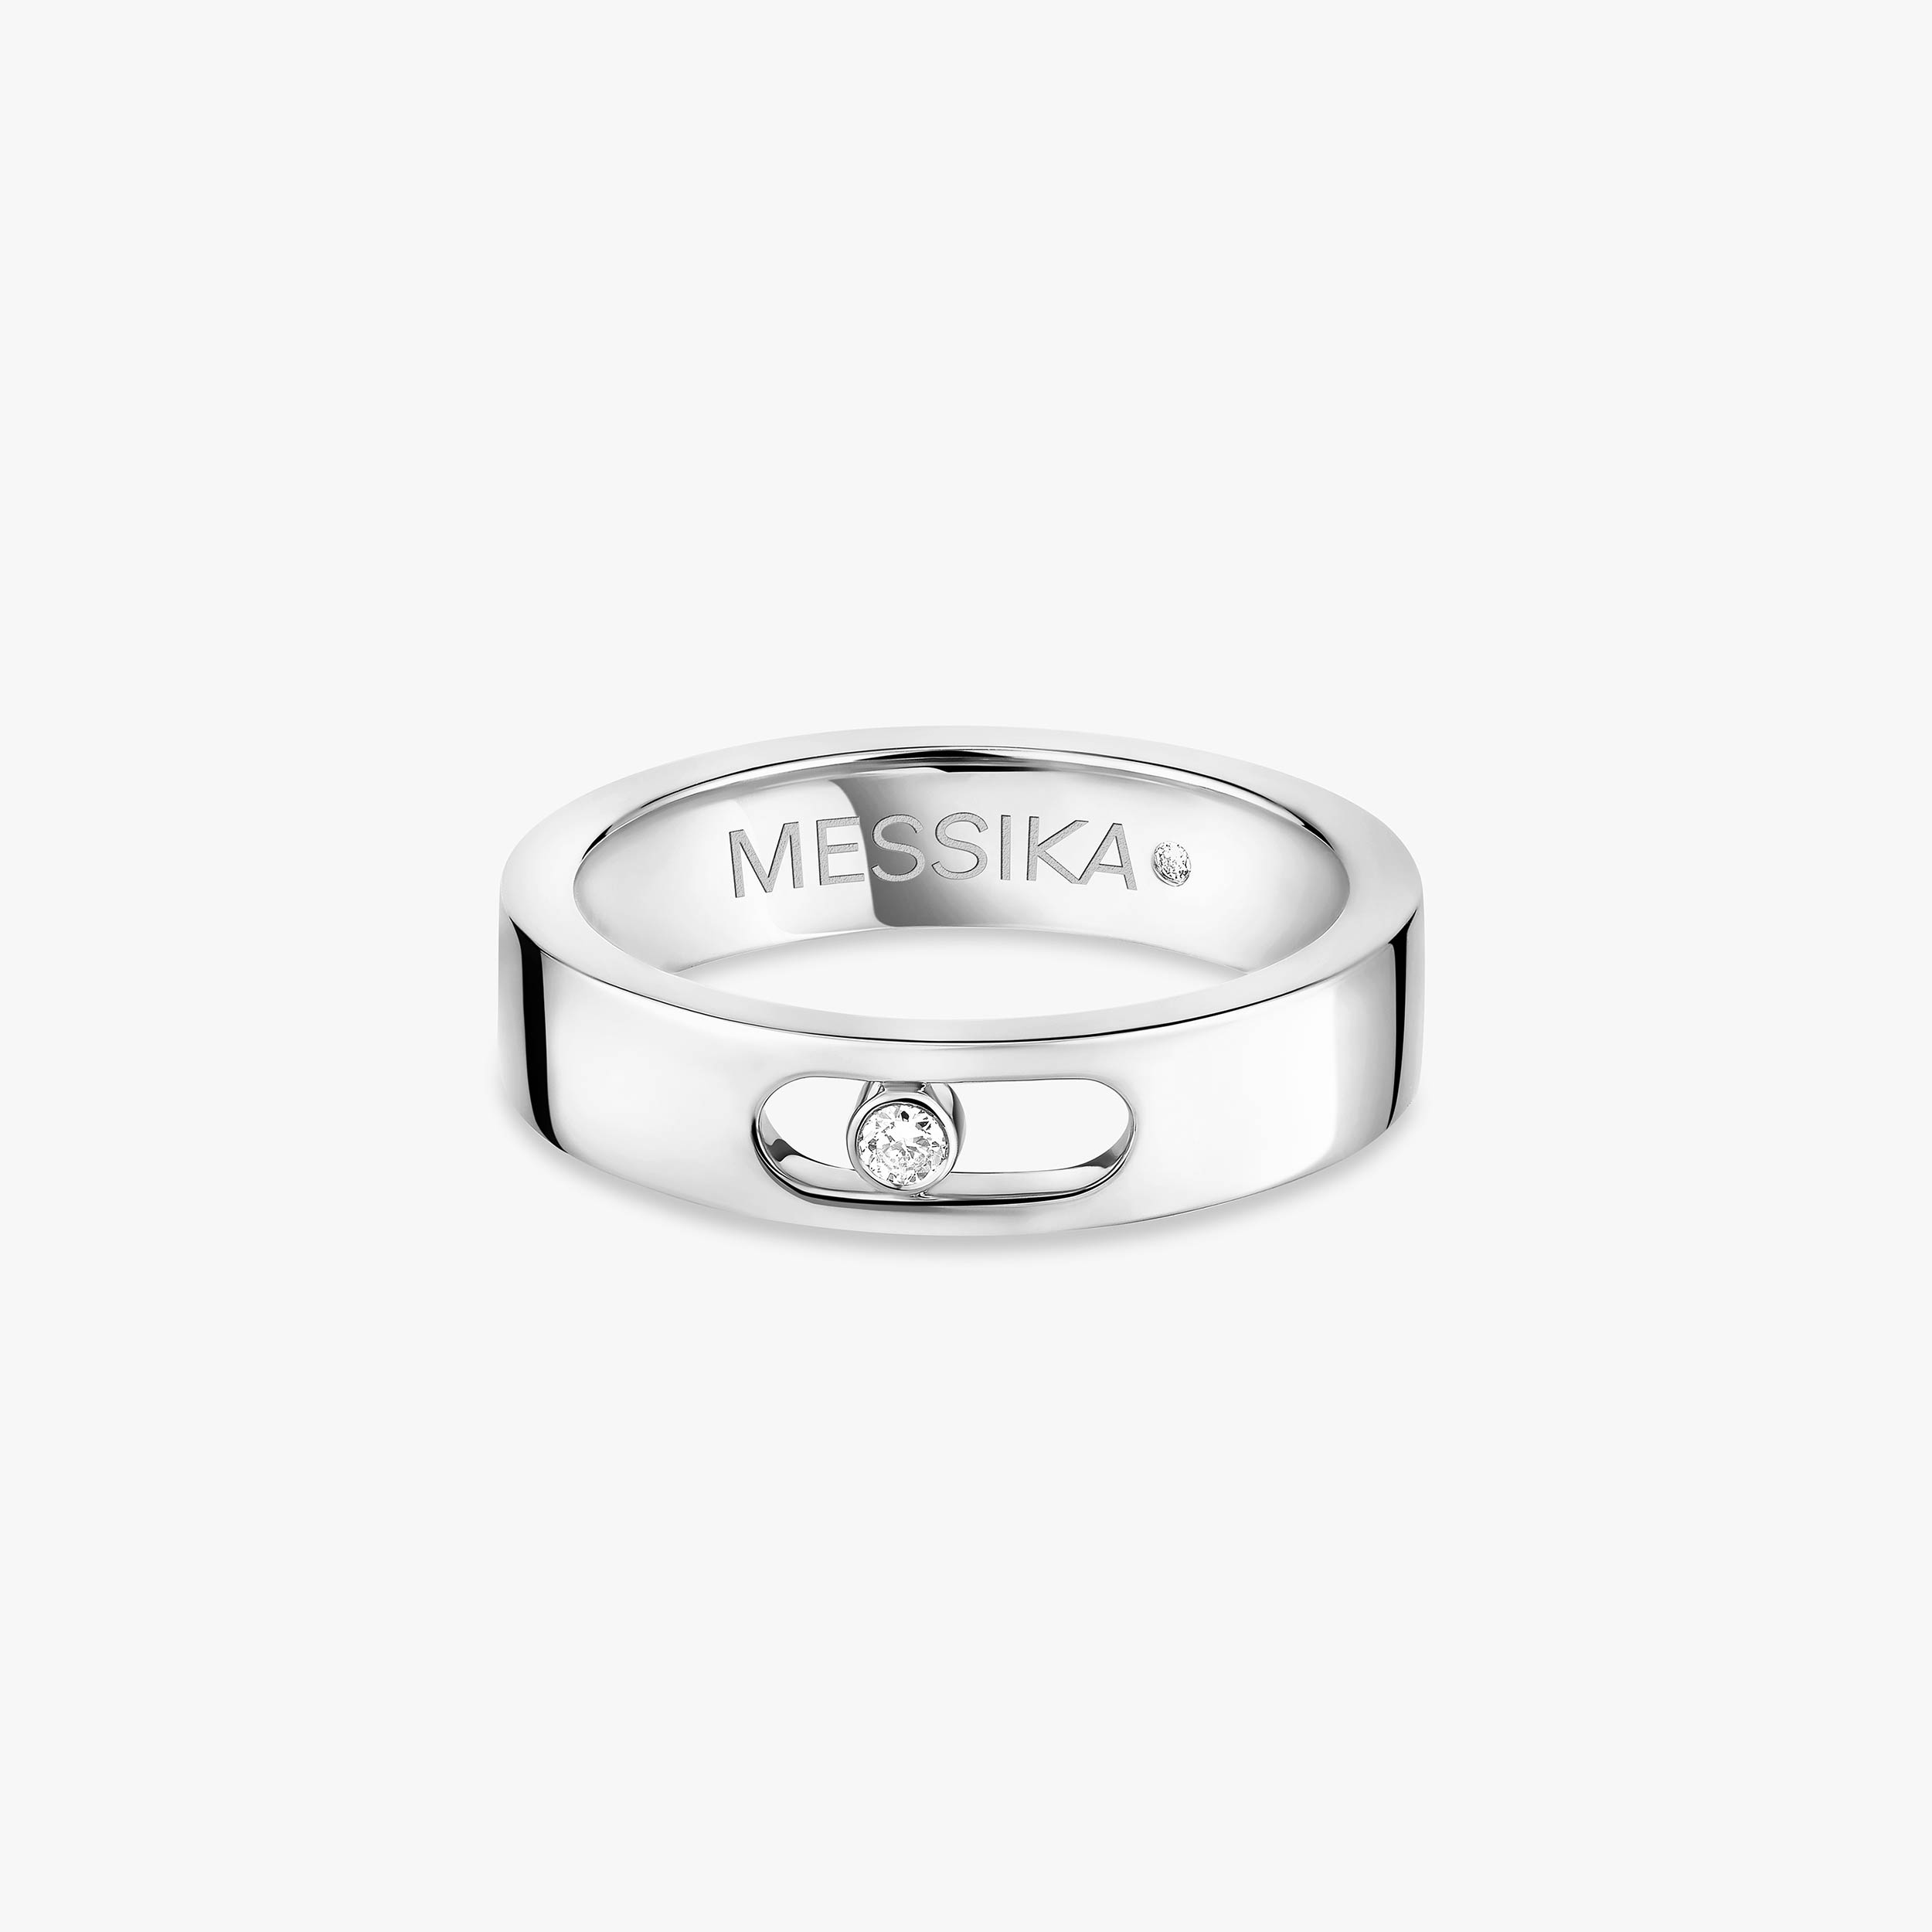 Move Joaillerie Wedding Ring White Gold For Her Diamond Ring 13553-WG